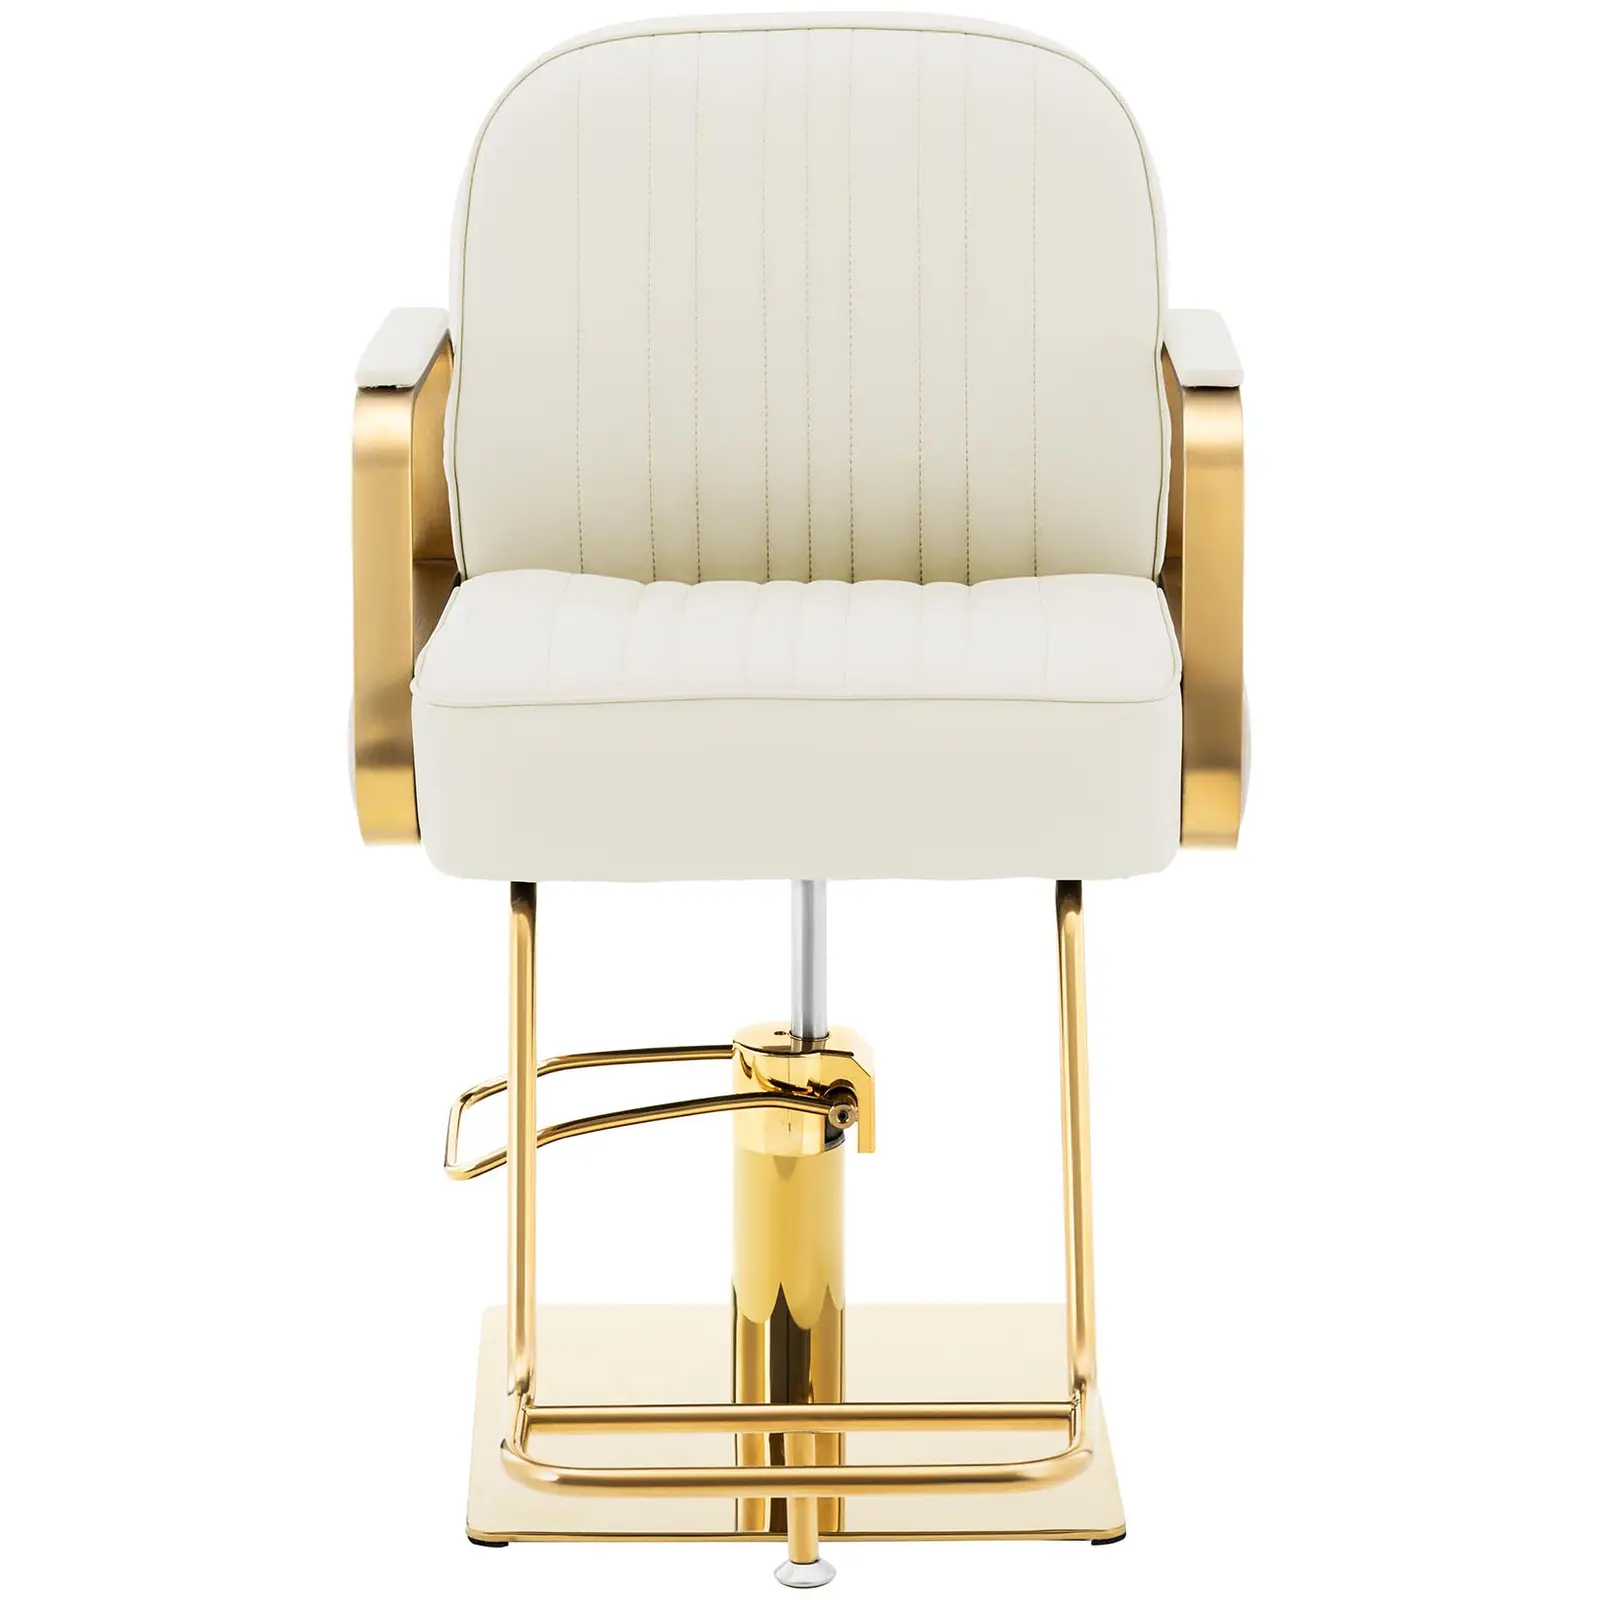 Fodrász szék lábtartóval - 920–1070 mm - max. 200 kg - krém / arany